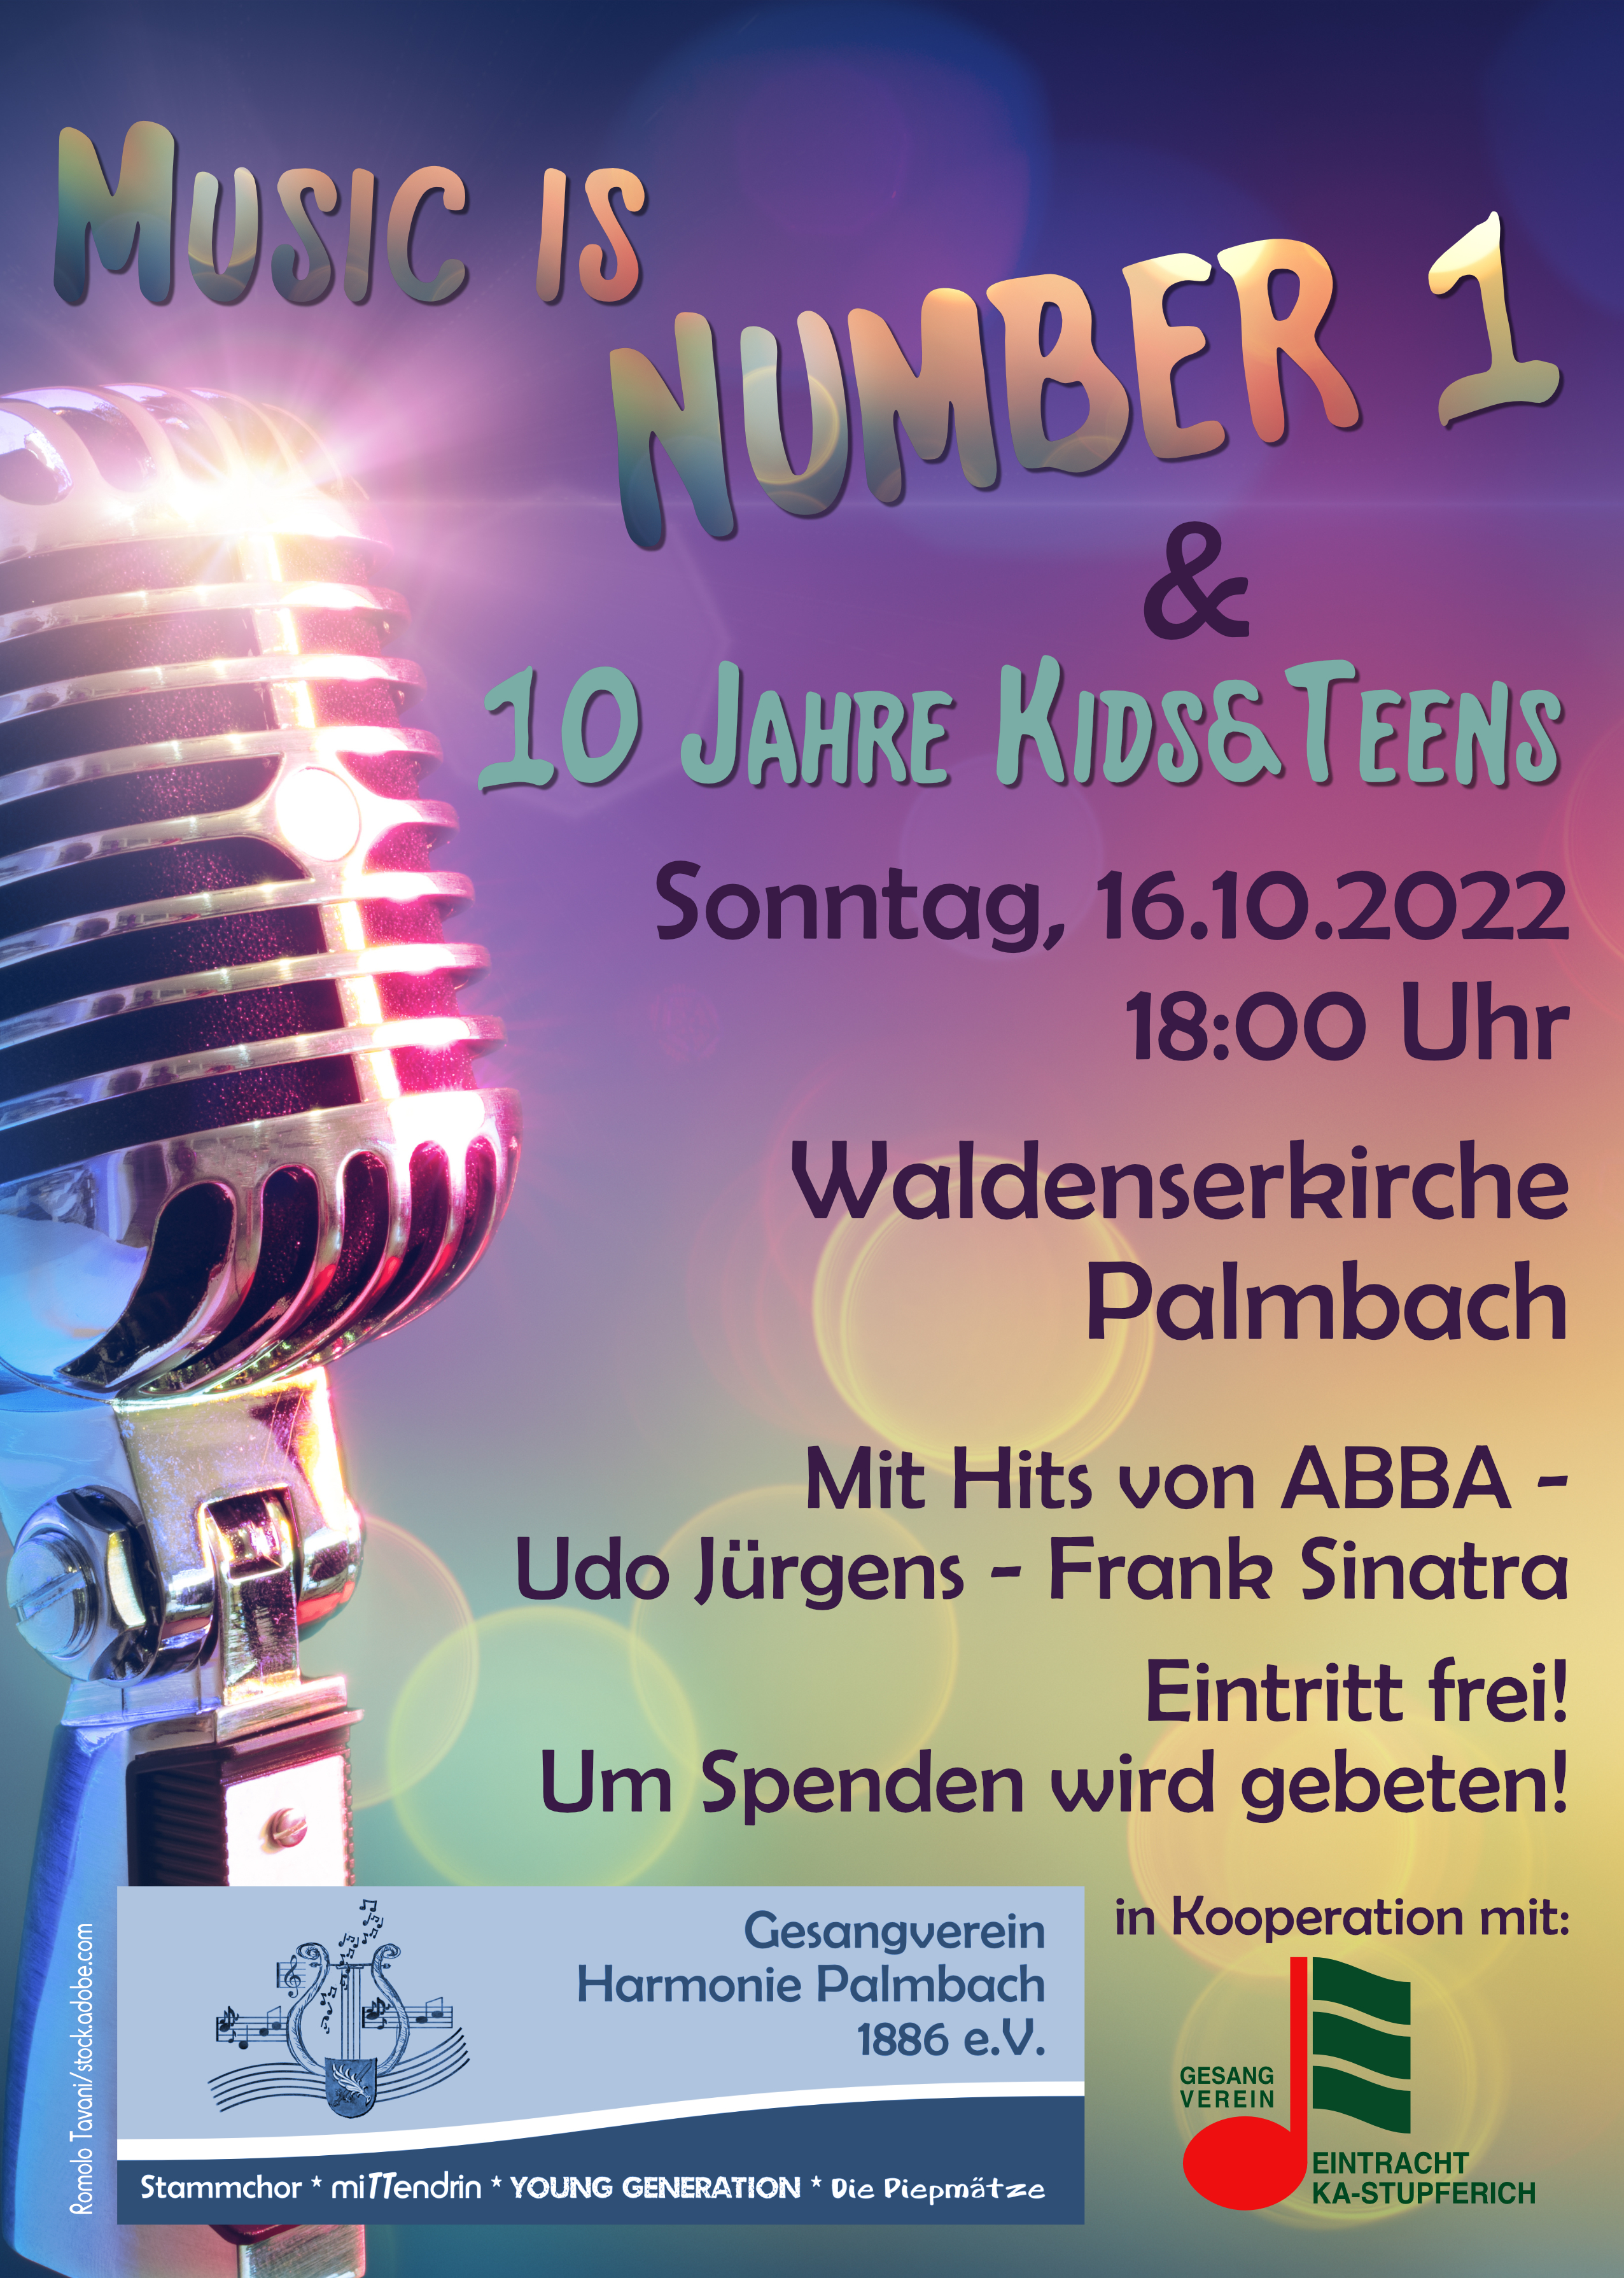 Music is Number One - 10 Jahre Kids&Teens - Konzert in der Waldenserkirche / Foto: Beatrix Raviol/Romolo Tavani/stock.adobe.com